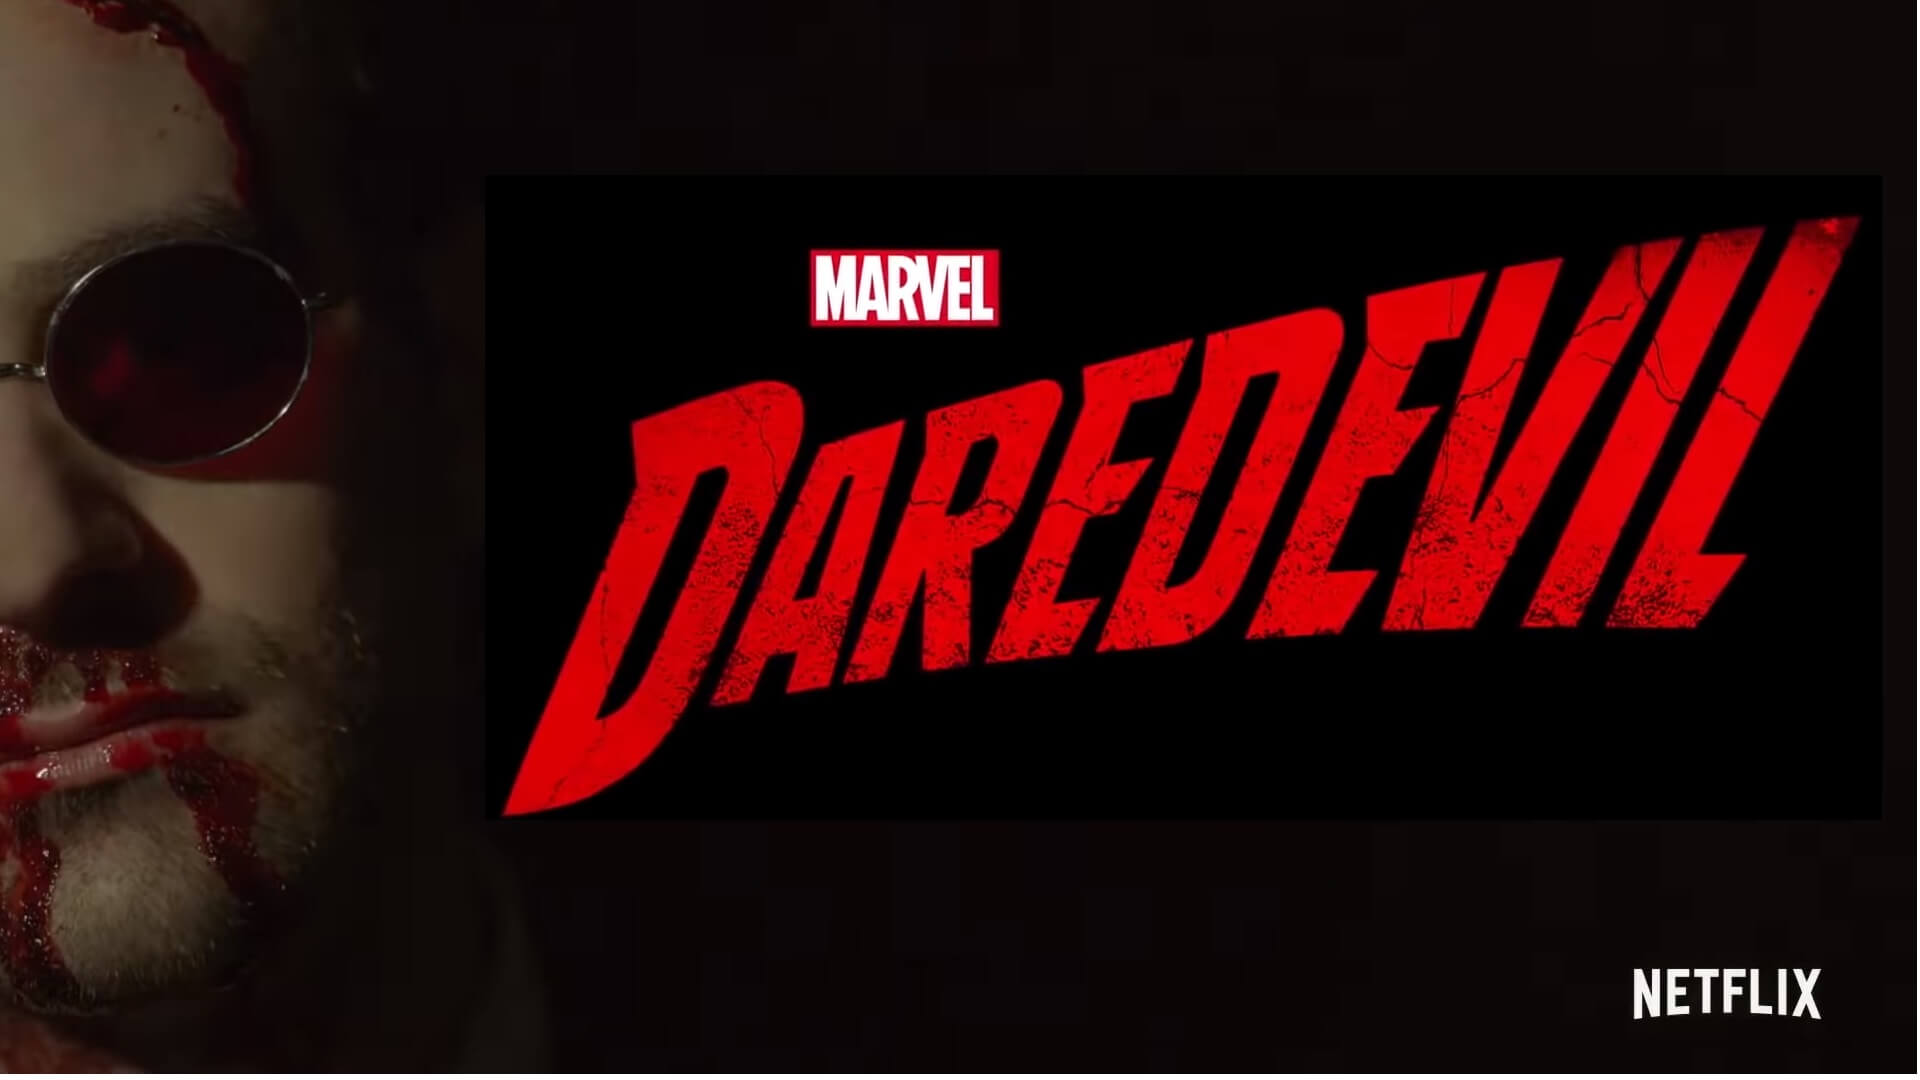 Daredevil Season 3 Poster 2018 Wallpapers